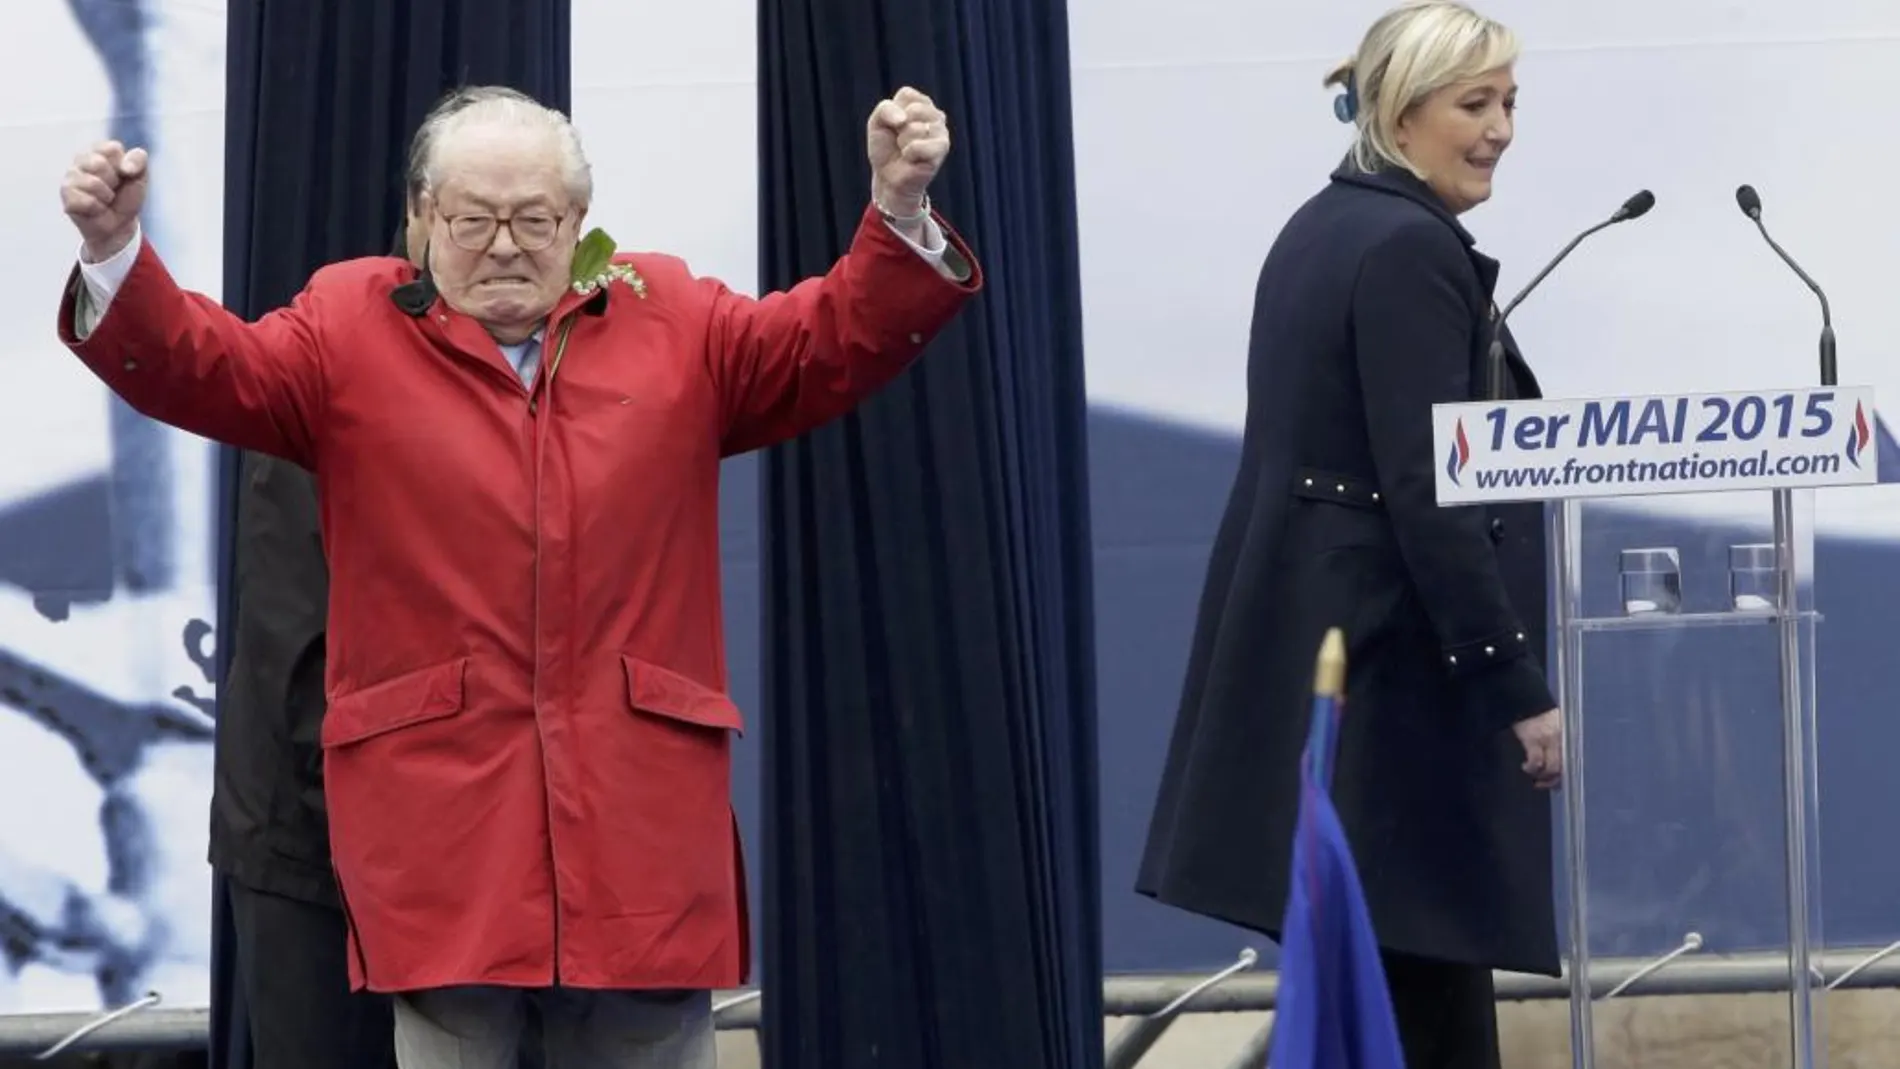 Le Pen junto a su hija el pasado 1 de mayo